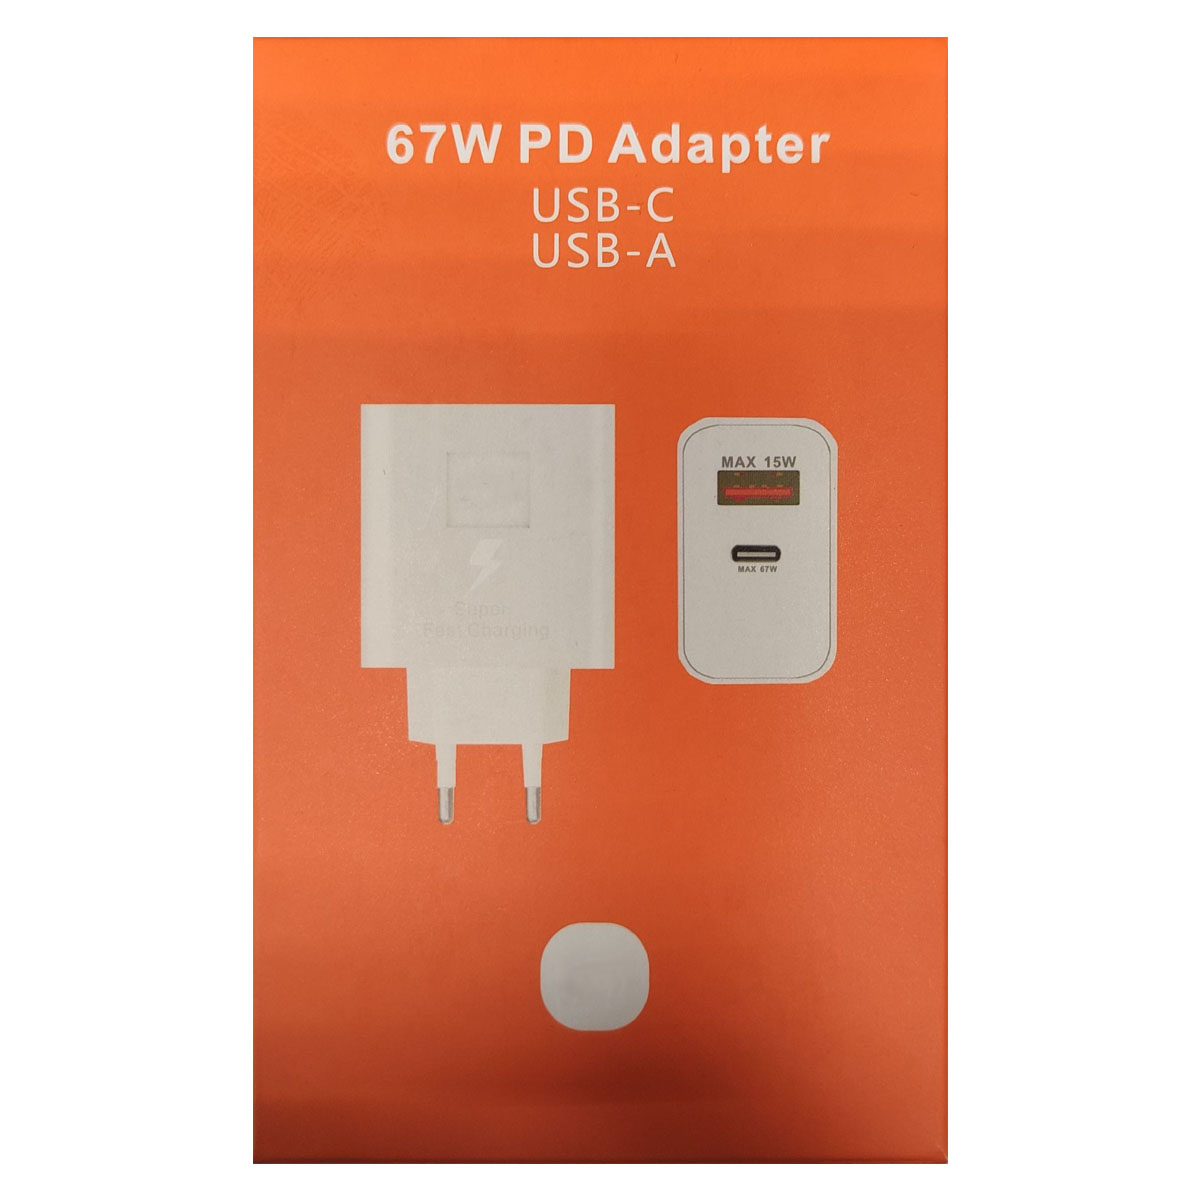 СЗУ (Сетевое зарядное устройство) MDY-K40-EY, MDY-12-EF, 67W, 1 USB, 1 USB Type C, цвет белый